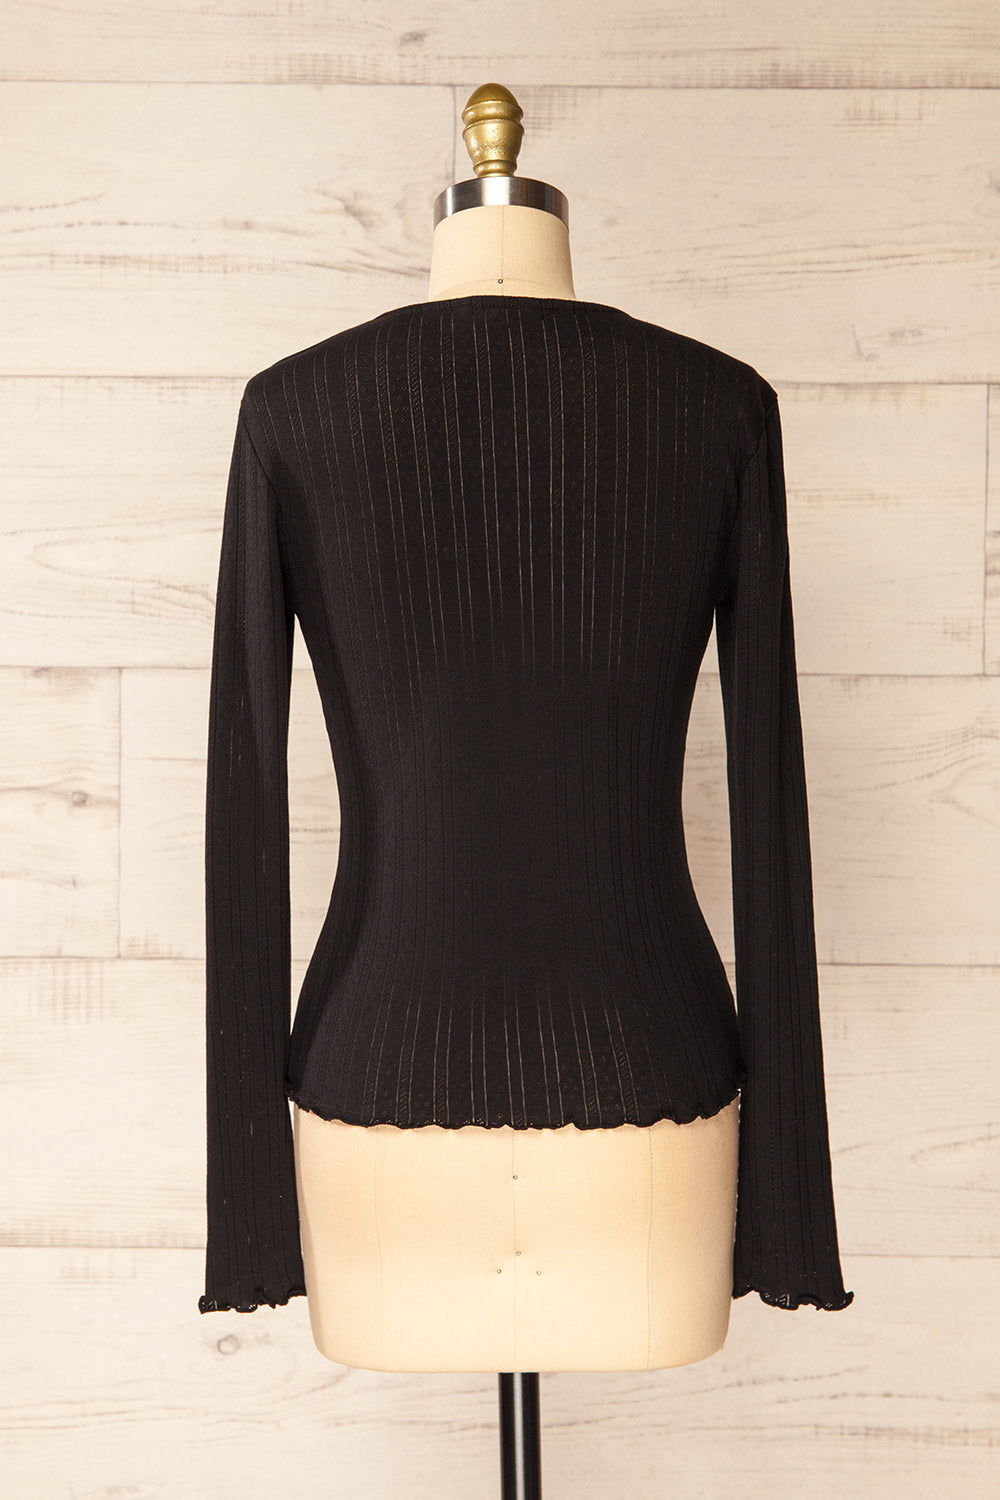 Toulon Black Long Sleeve Lace-Knit Top | La petite garçonne back view